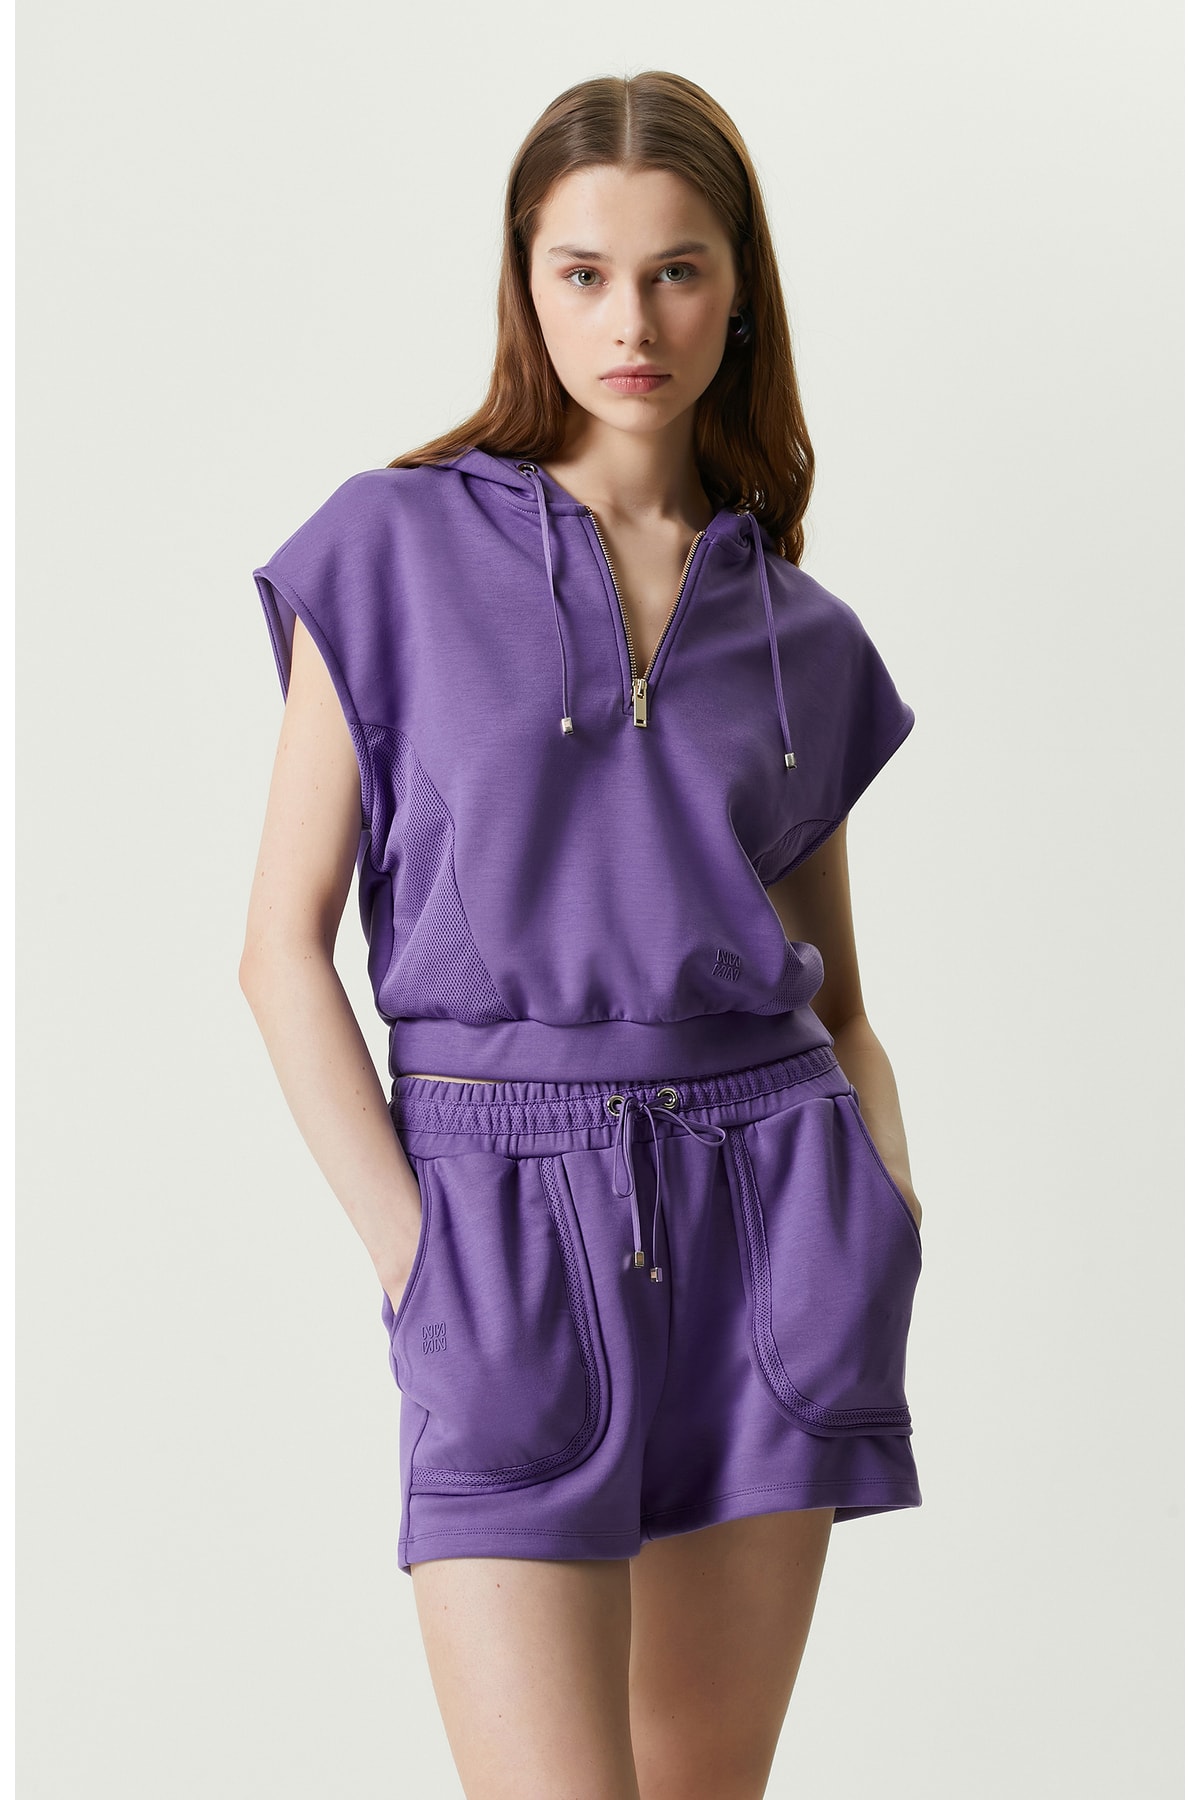 Фиолетовый свитшот без рукавов с капюшоном Network, фиолетовый худи без рукавов elyts фиолетовый